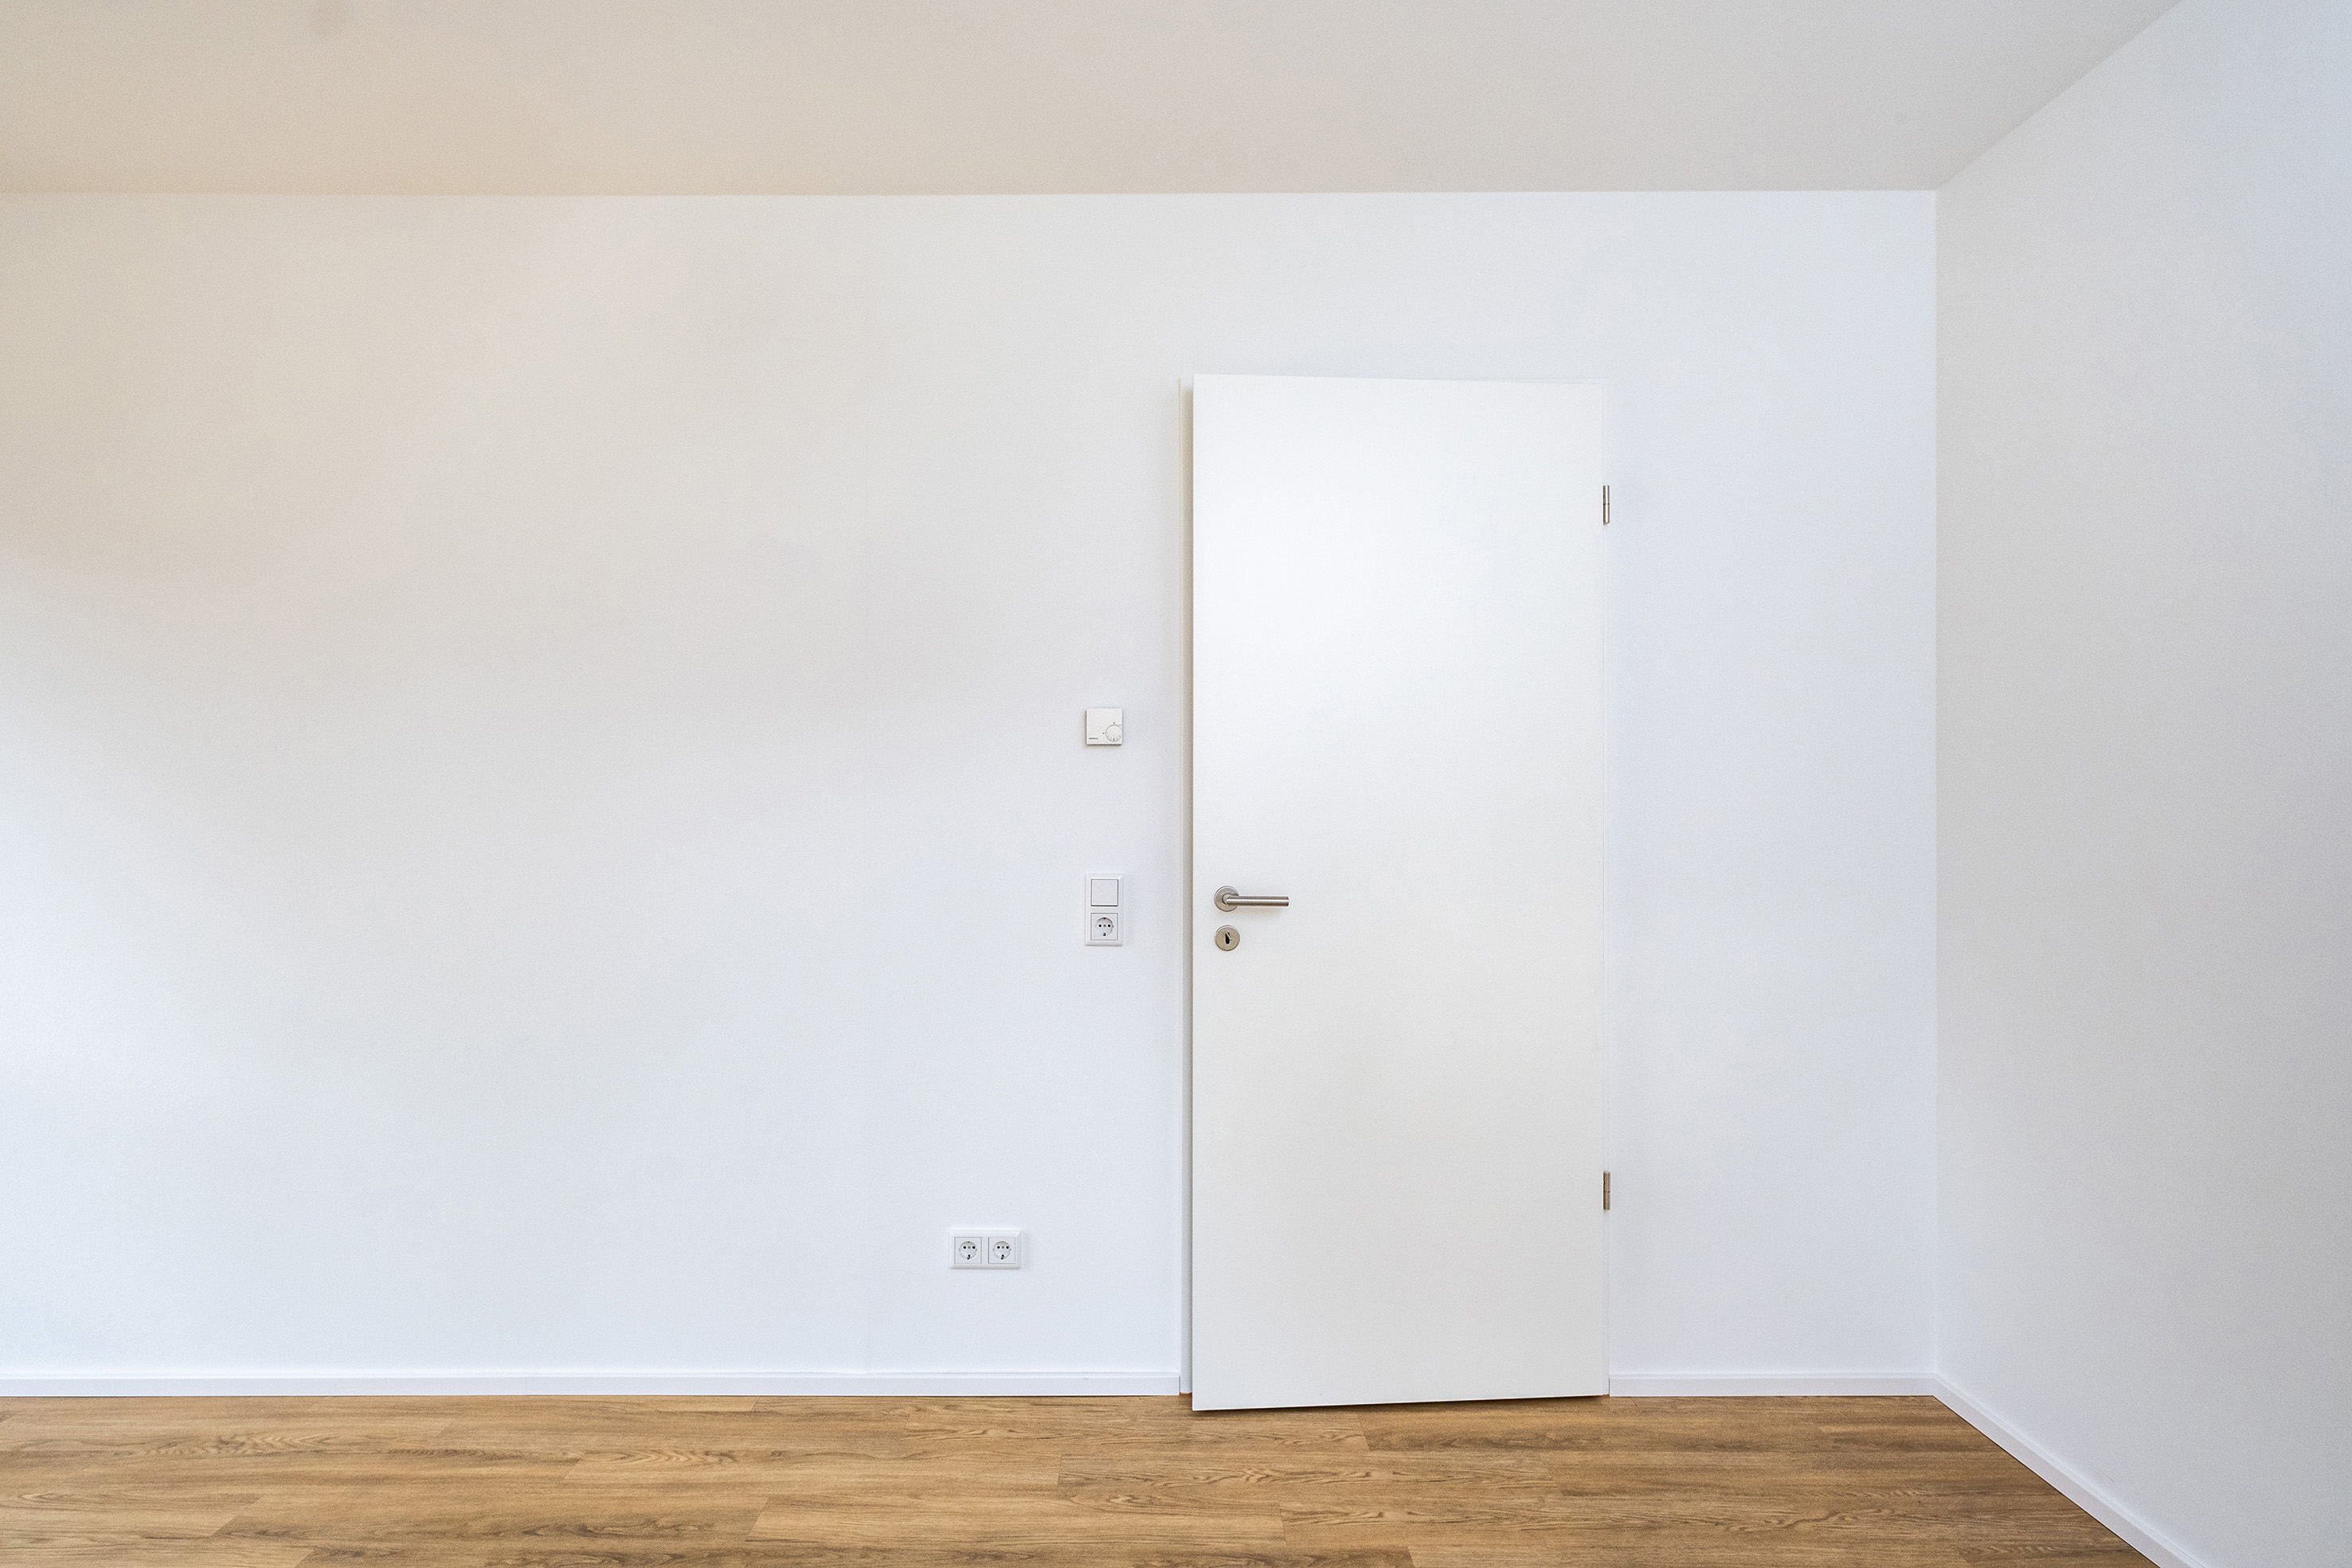 Neubau: ein Zimmer mit angelehnter Tür, alle Wände sind weiß, der Boden ist aus Holz